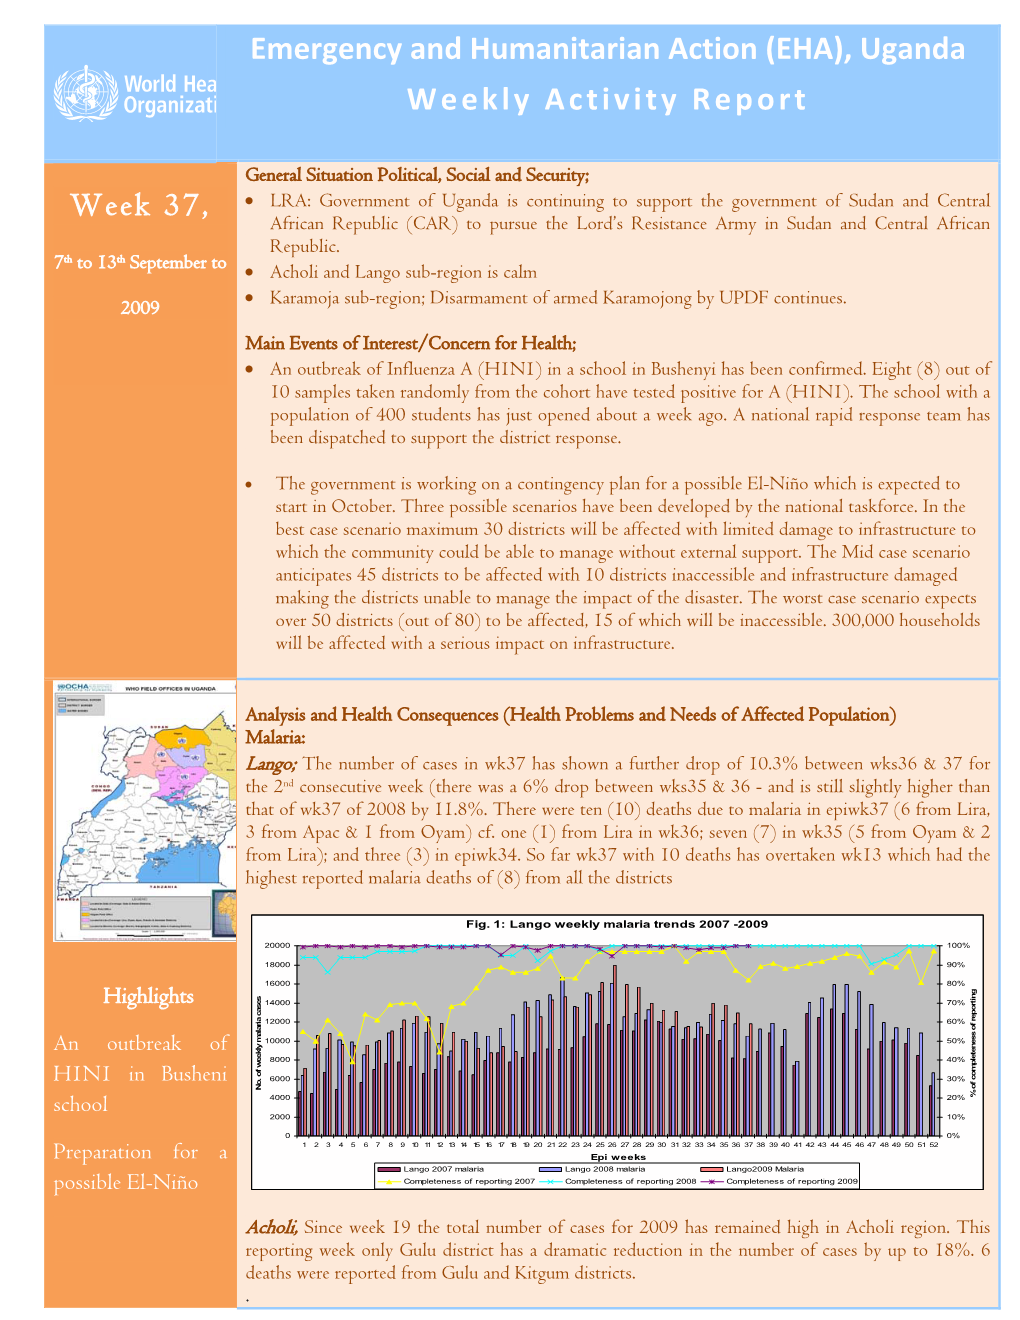 (EHA), Uganda Weekly Activity Report Week 37